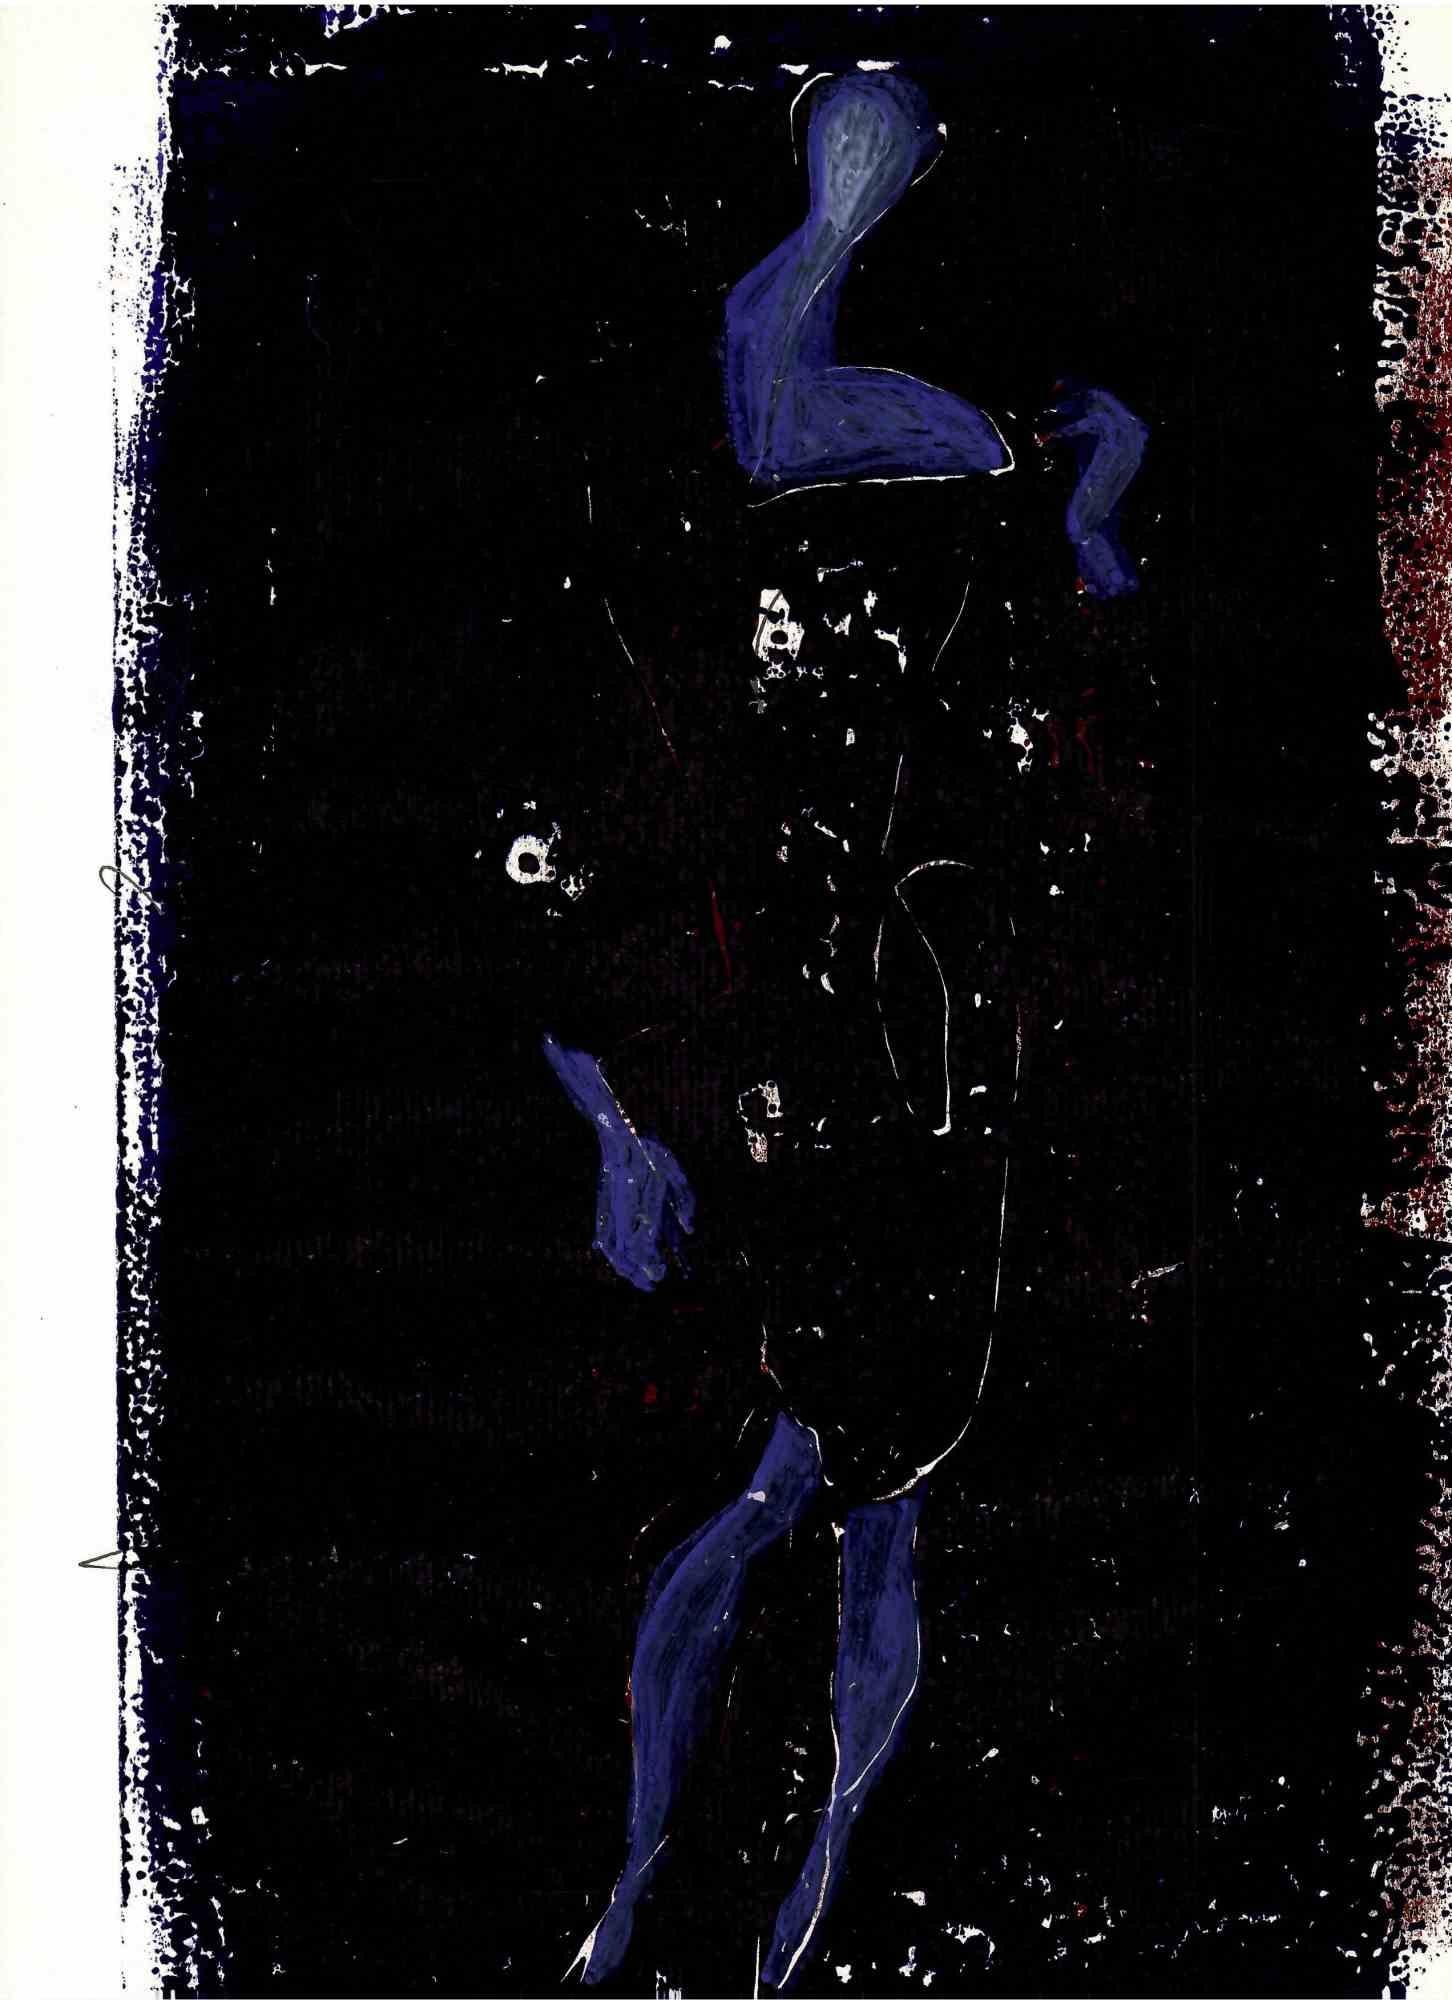 Blue Figure in Dark Night - Original Lithograph - 1970s